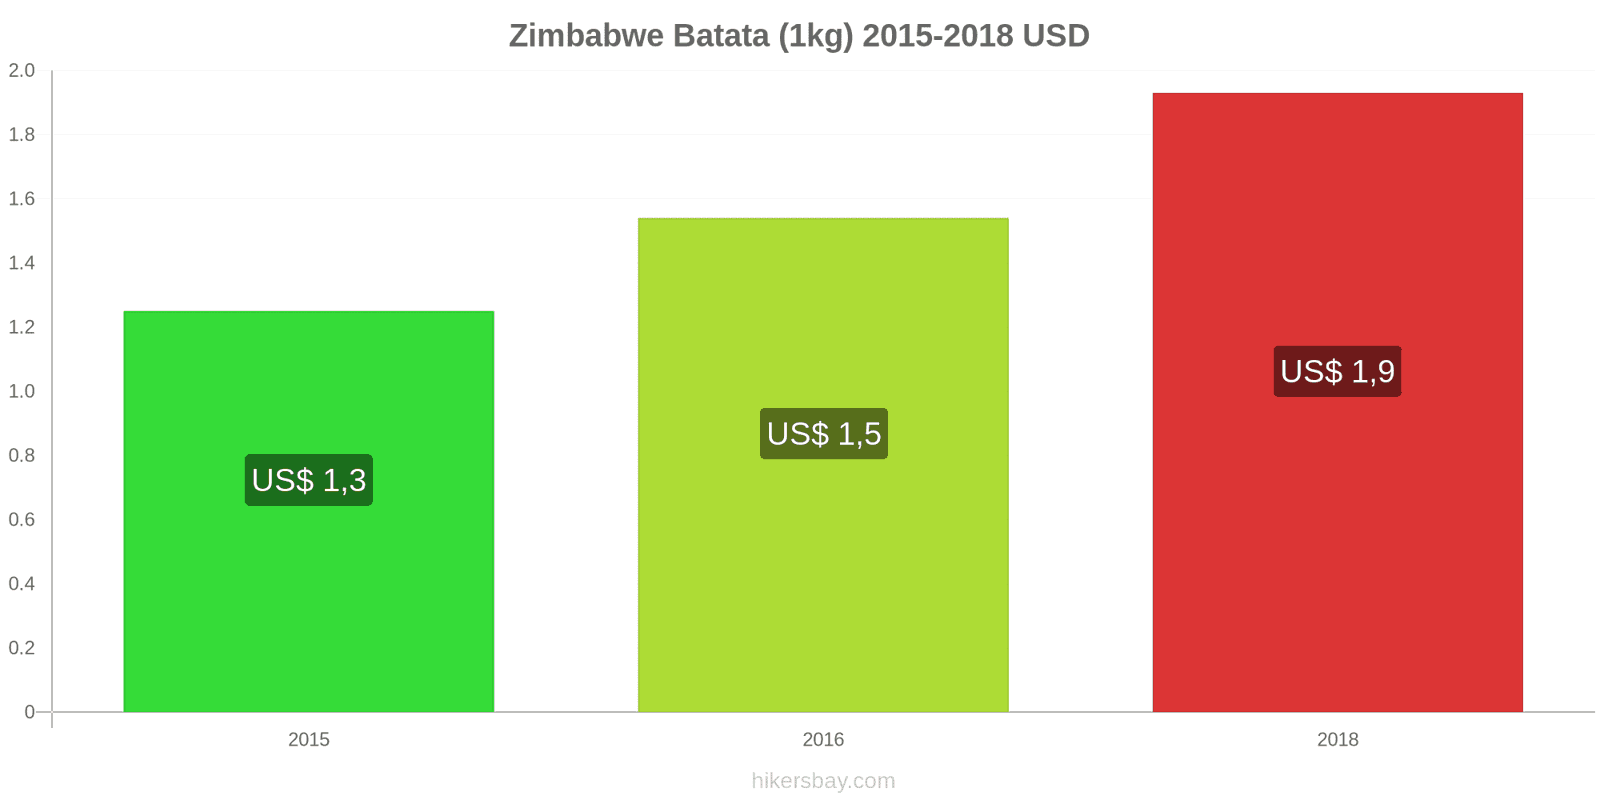 Zimbabwe mudanças de preços Batatas (1kg) hikersbay.com